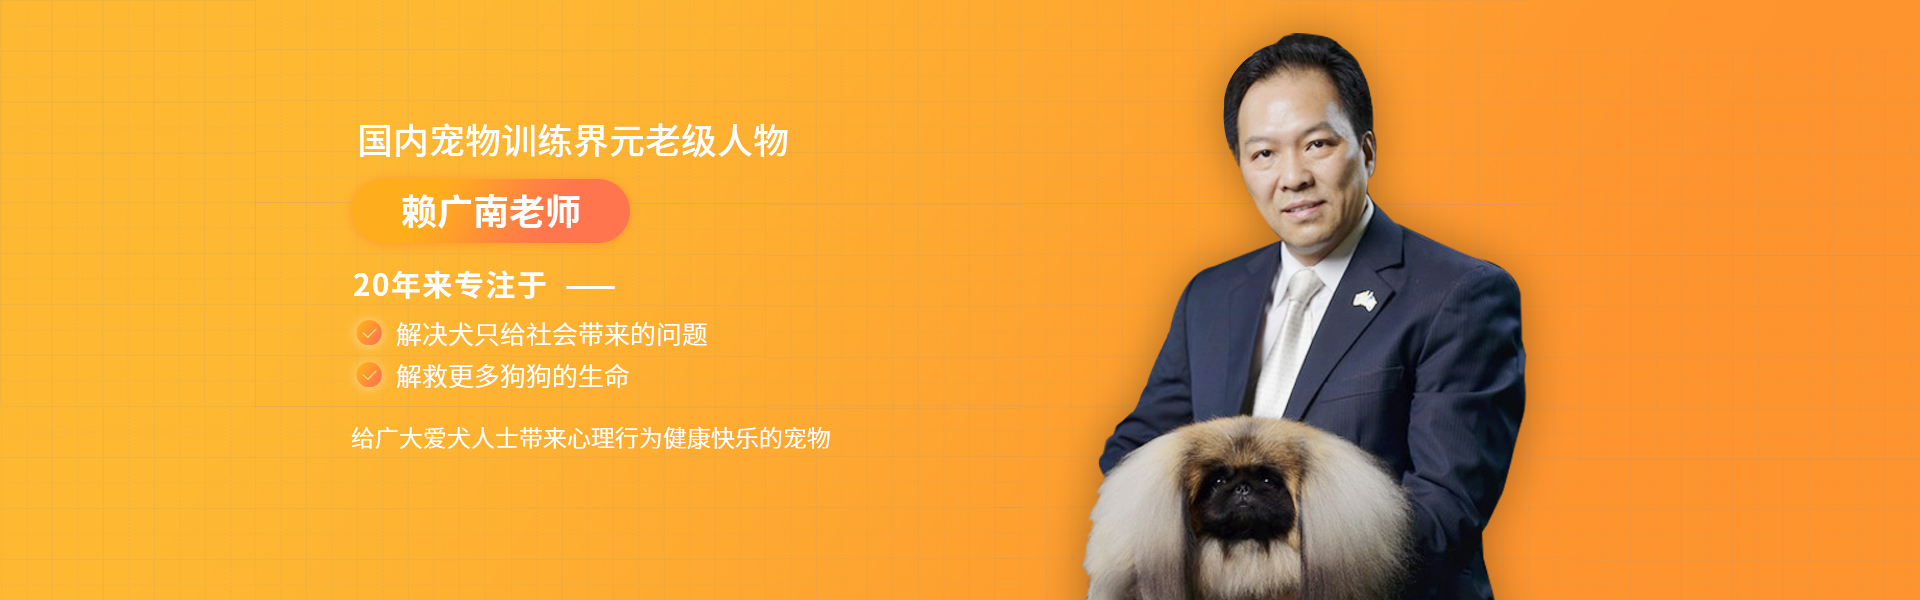 帝皇宠物学校赖广南老师20年专注于犬只心理健康行为